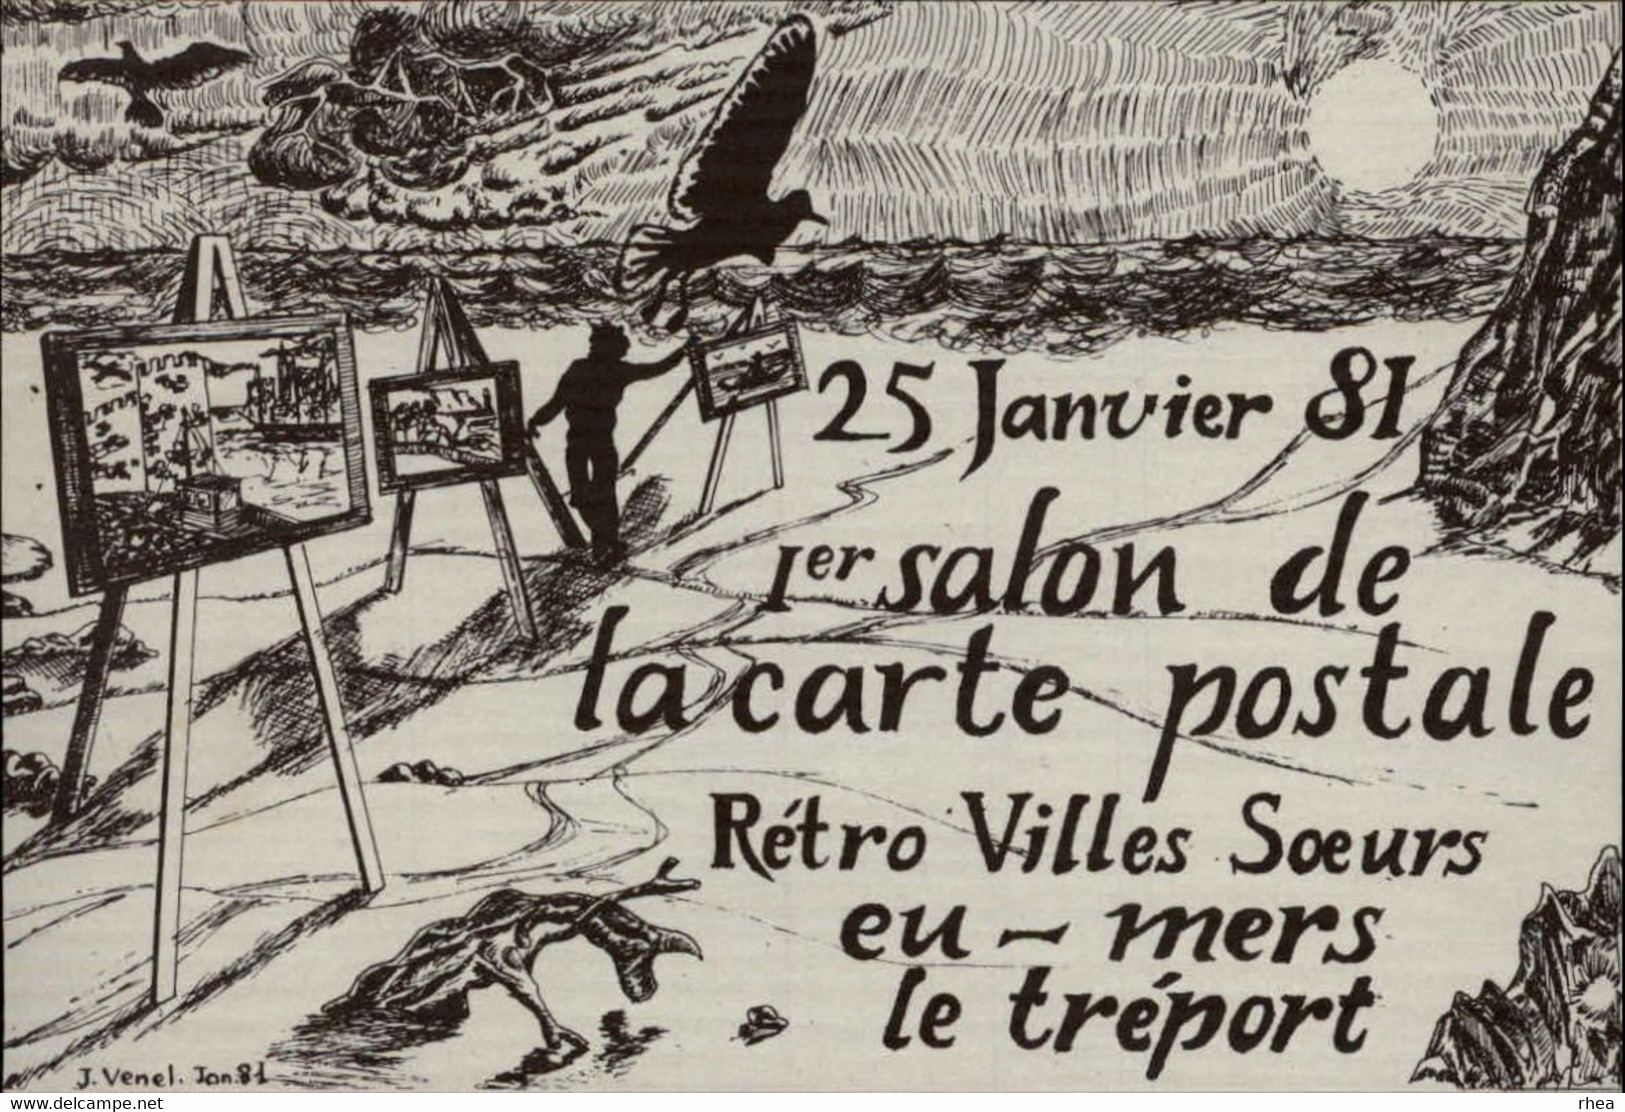 SALONS DE COLLECTIONS - Salon De Cartes Postales - Les Villes Sœurs - Eu - Le Tréport - Mers - 1981 - Dessin De Venel - Bourses & Salons De Collections